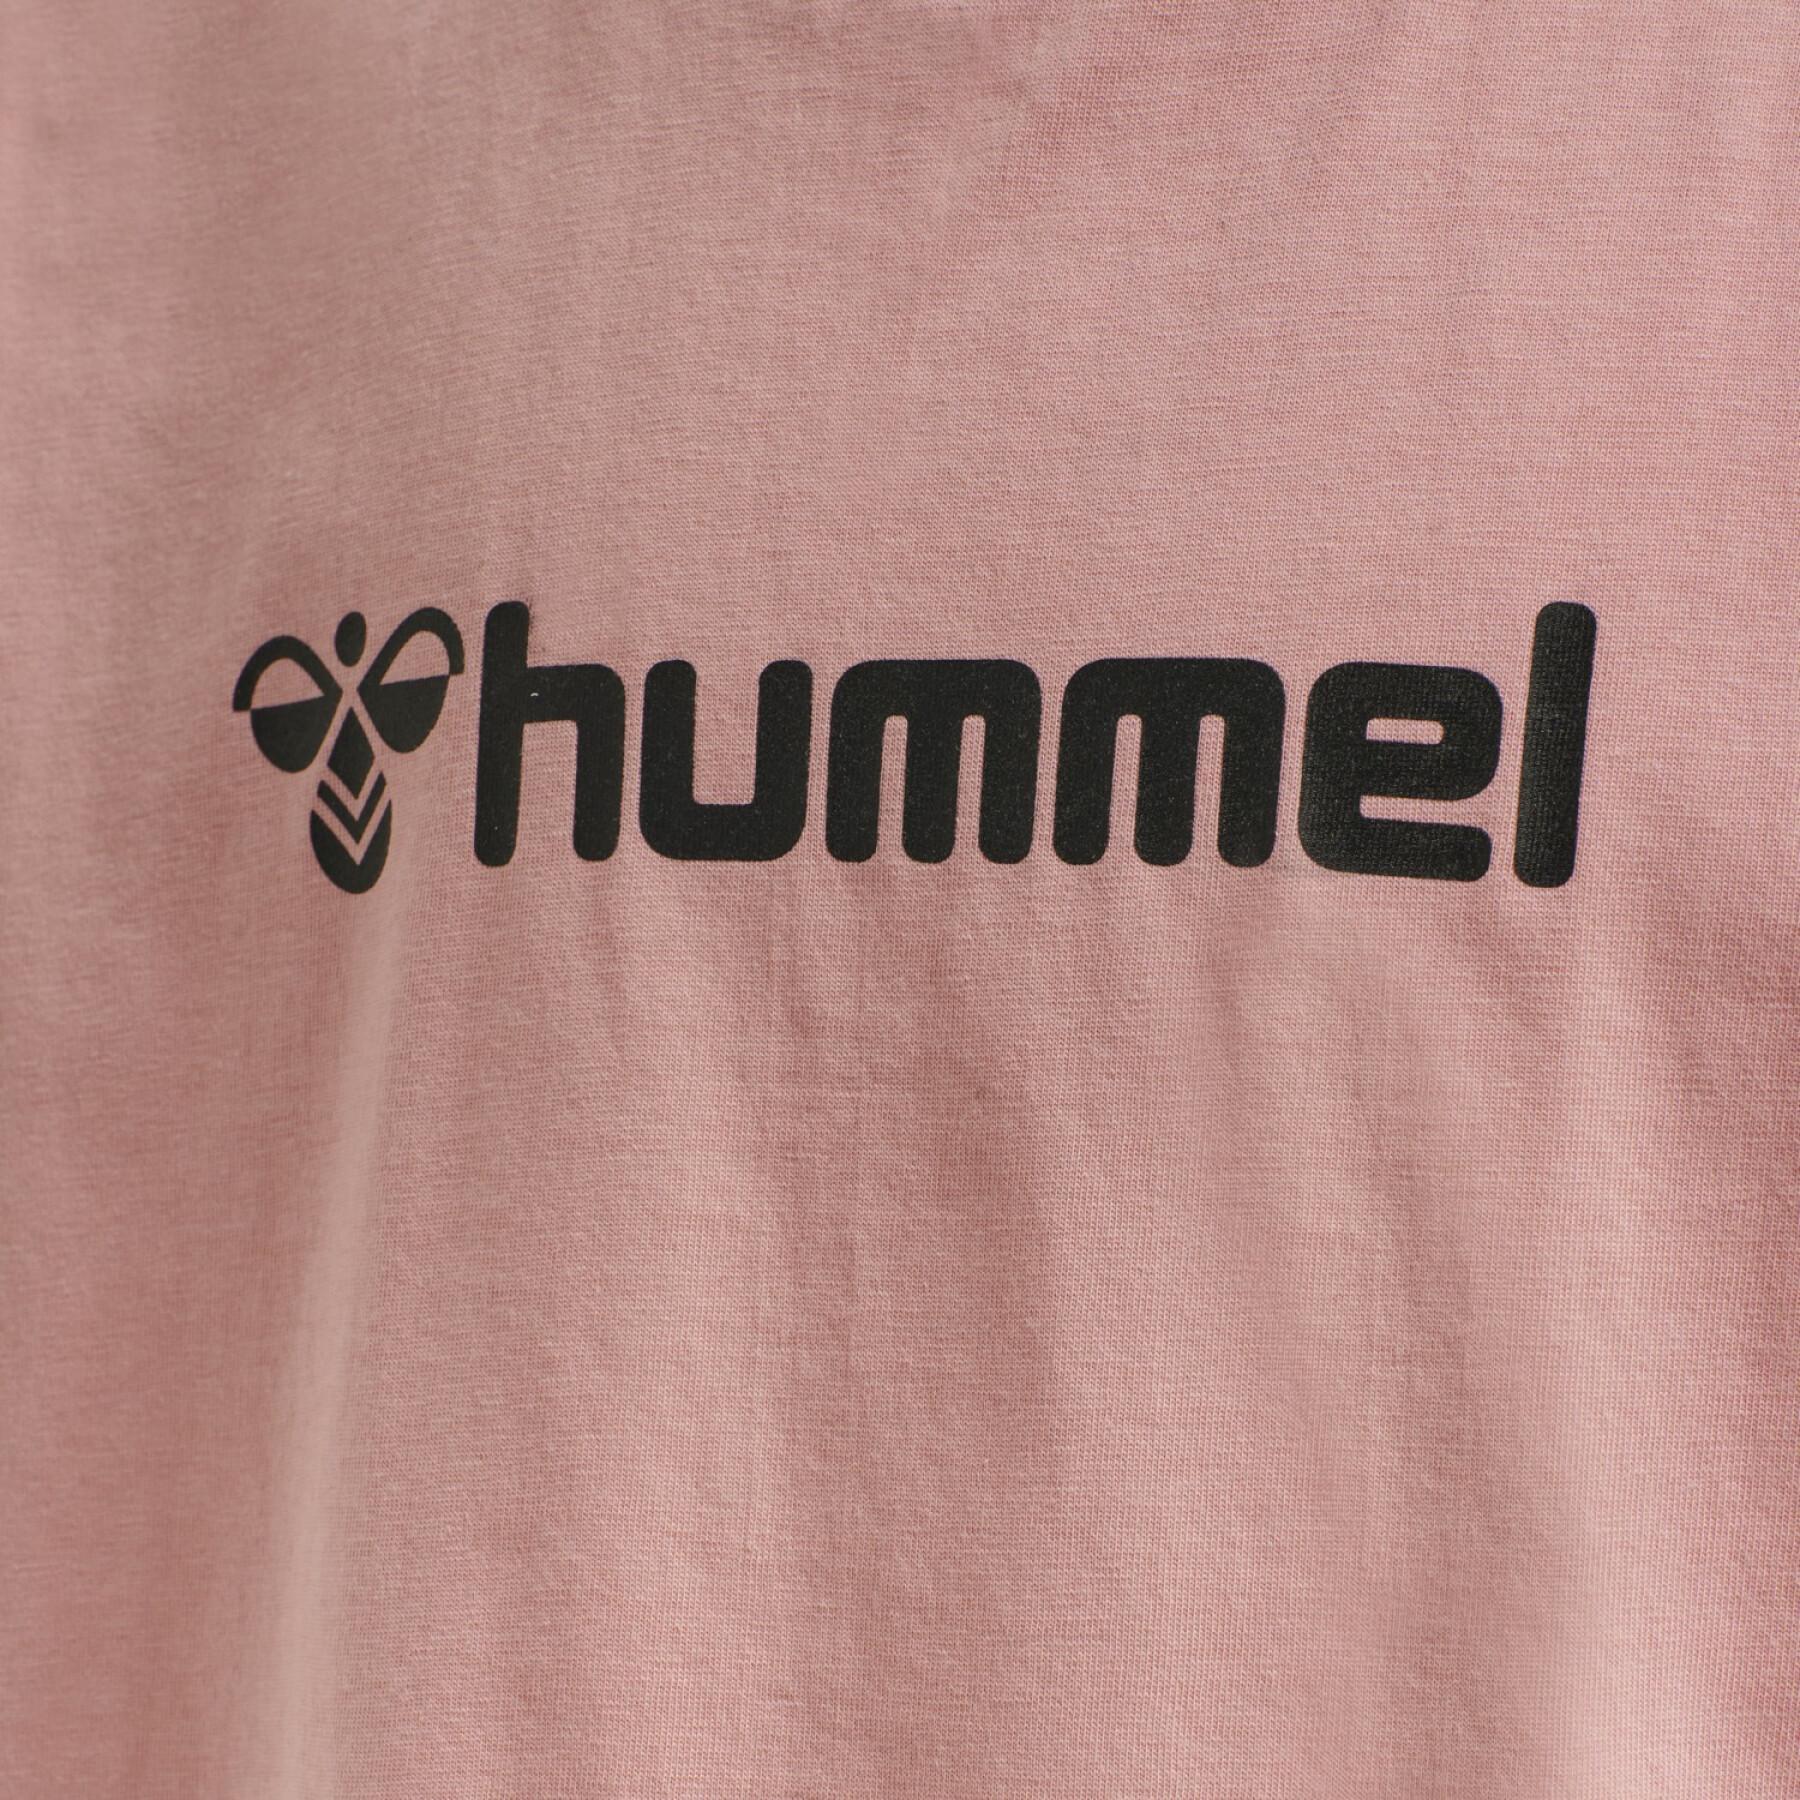 Shorts för barn Hummel HmINova